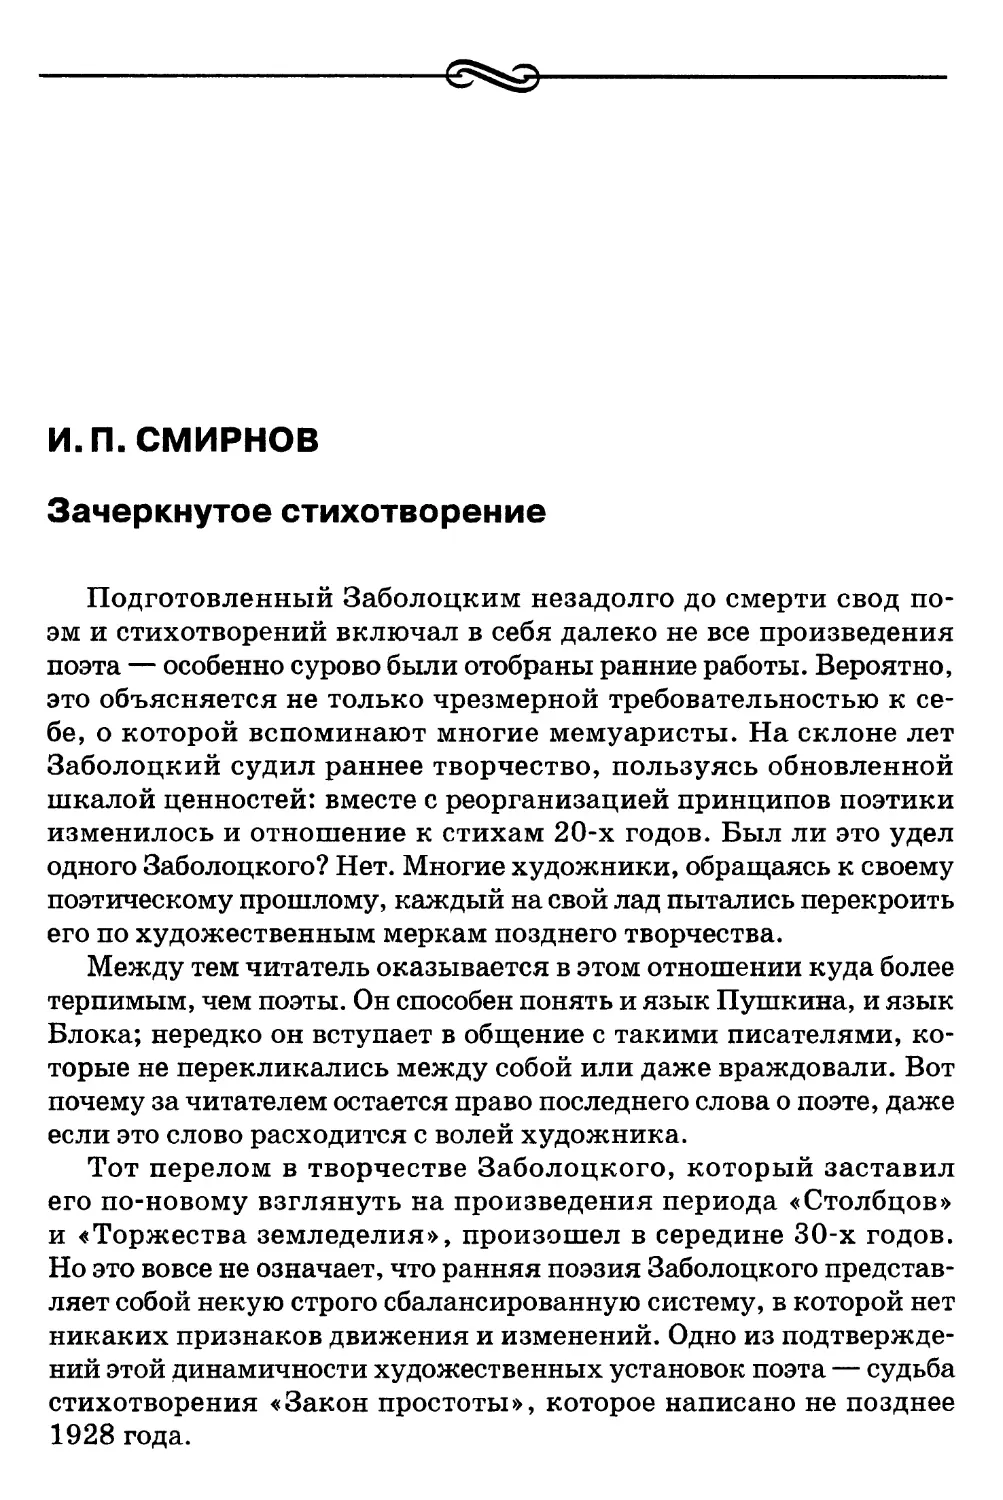 И. П. Смирнов. Зачеркнутое стихотворение